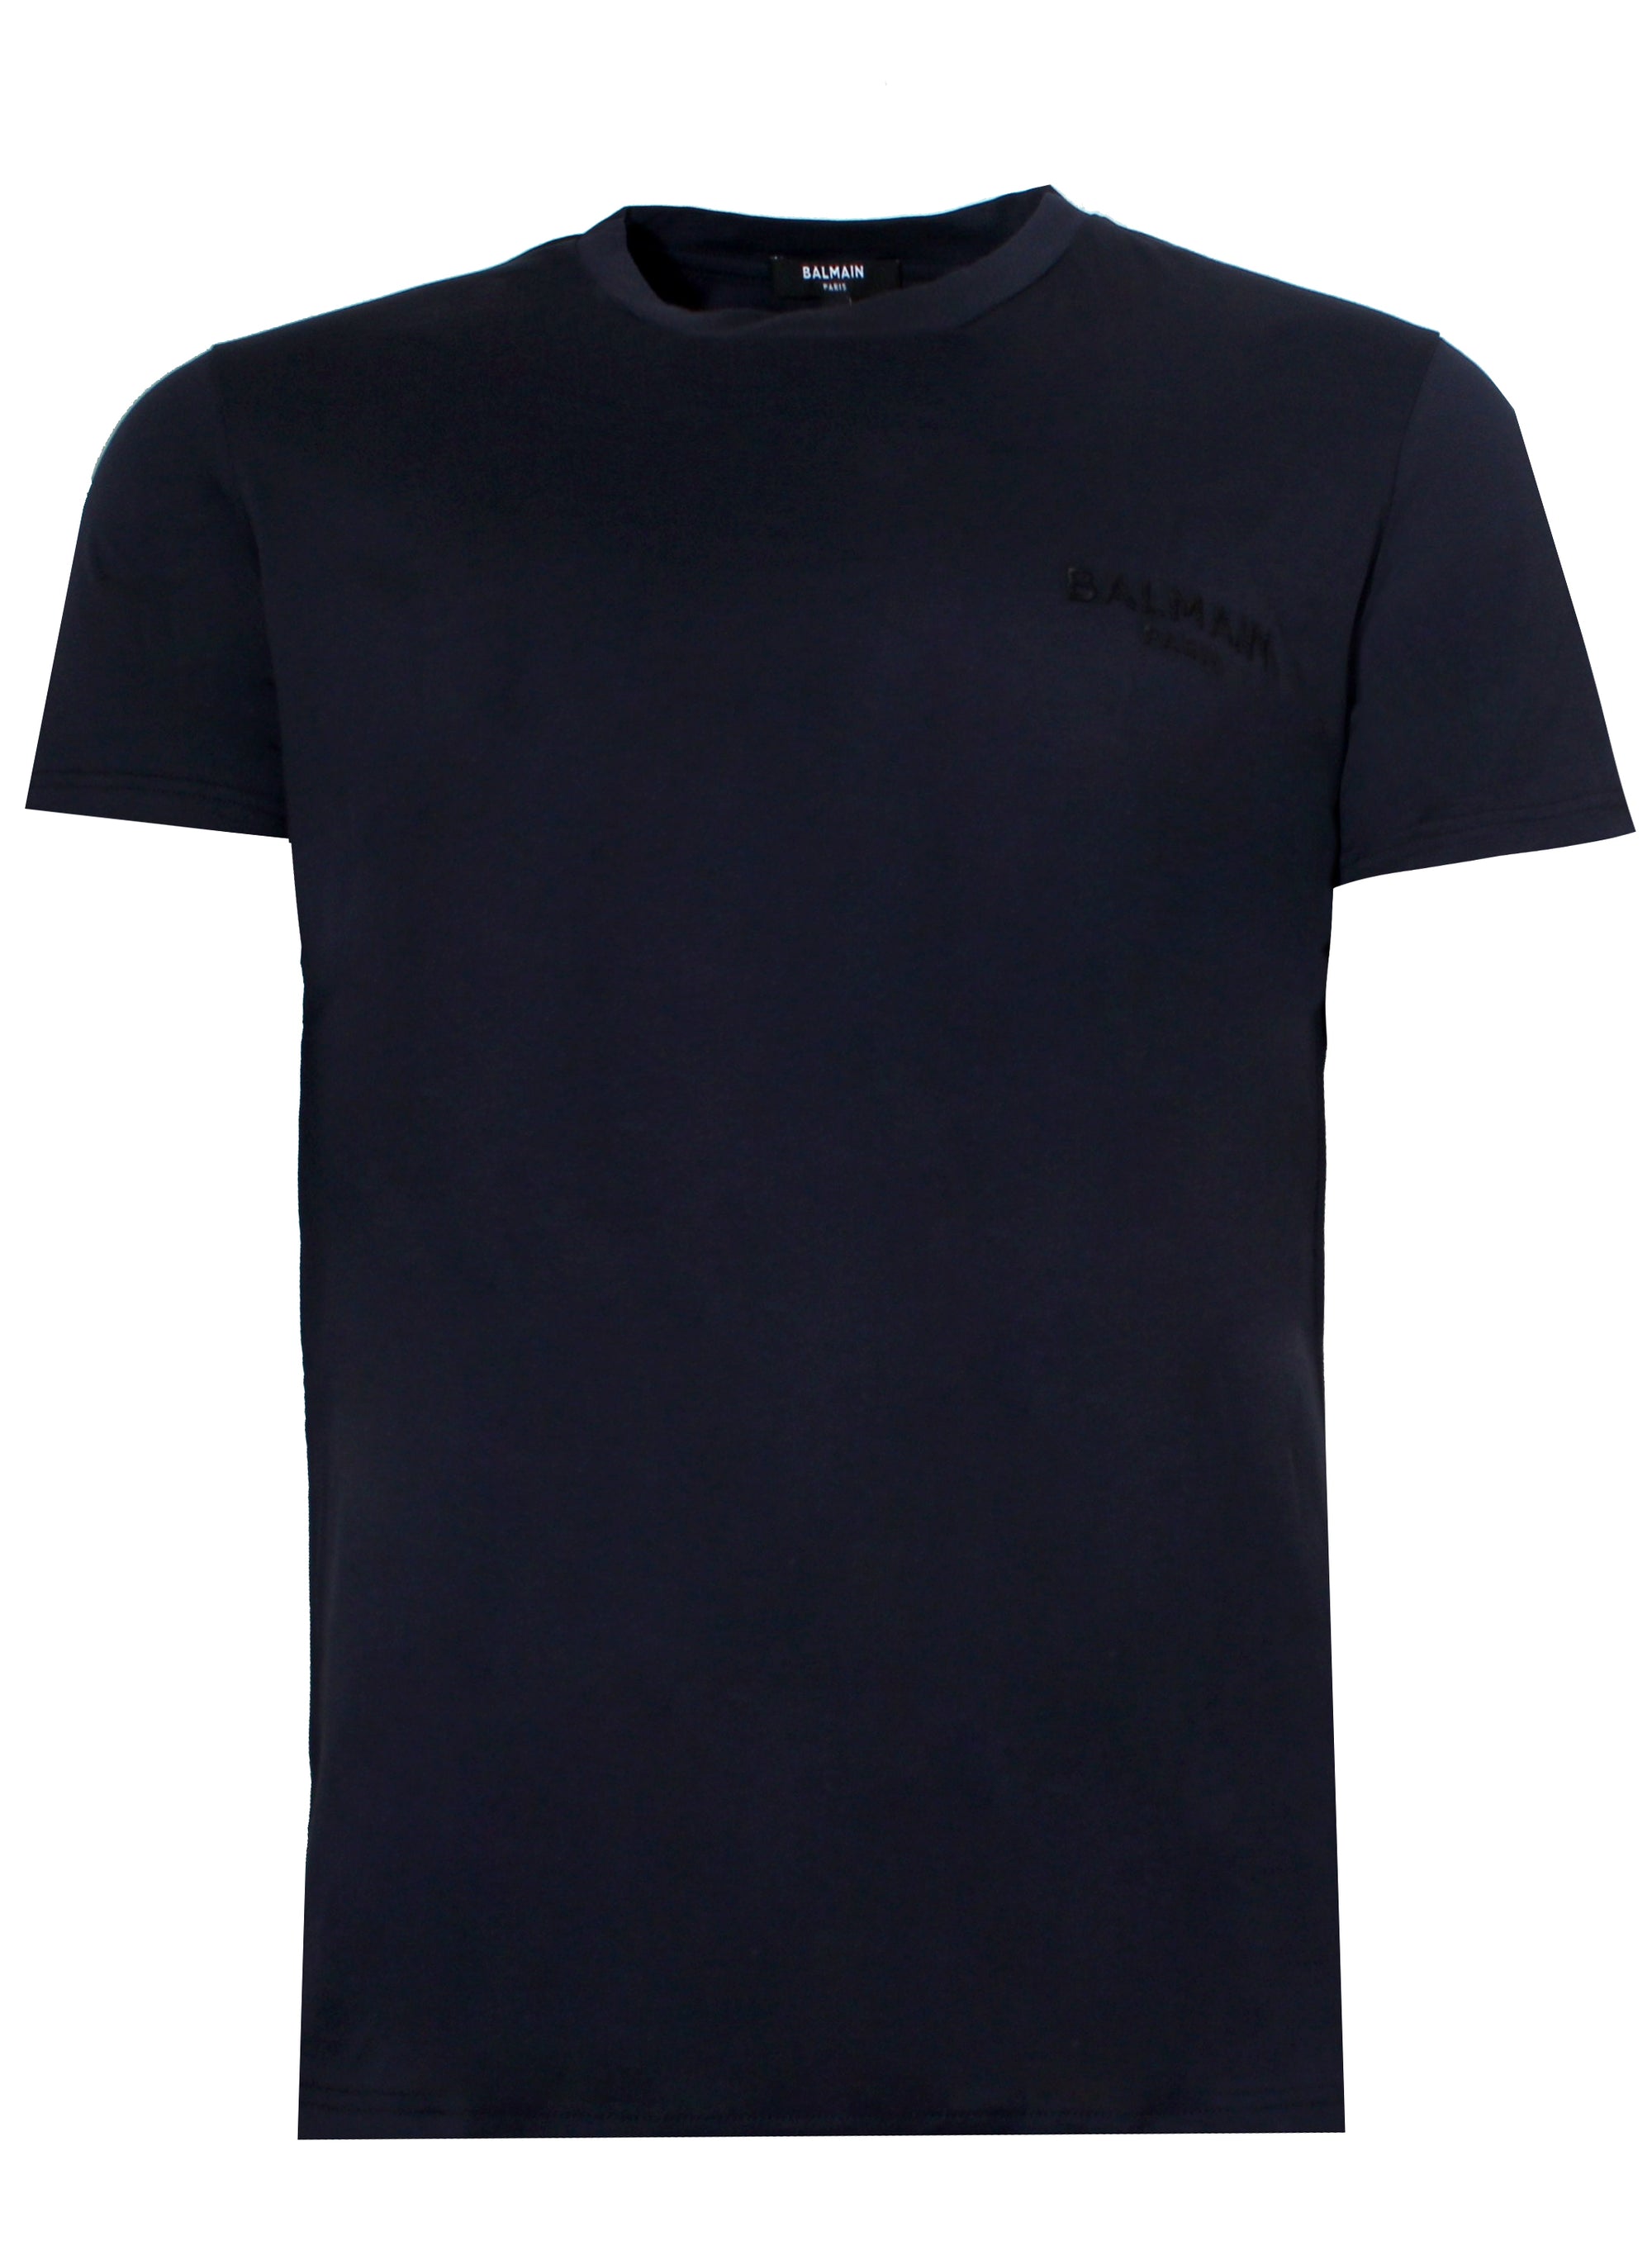 Balmain Paris Short Sleeve Logo Tee Shirt-Dark Blue